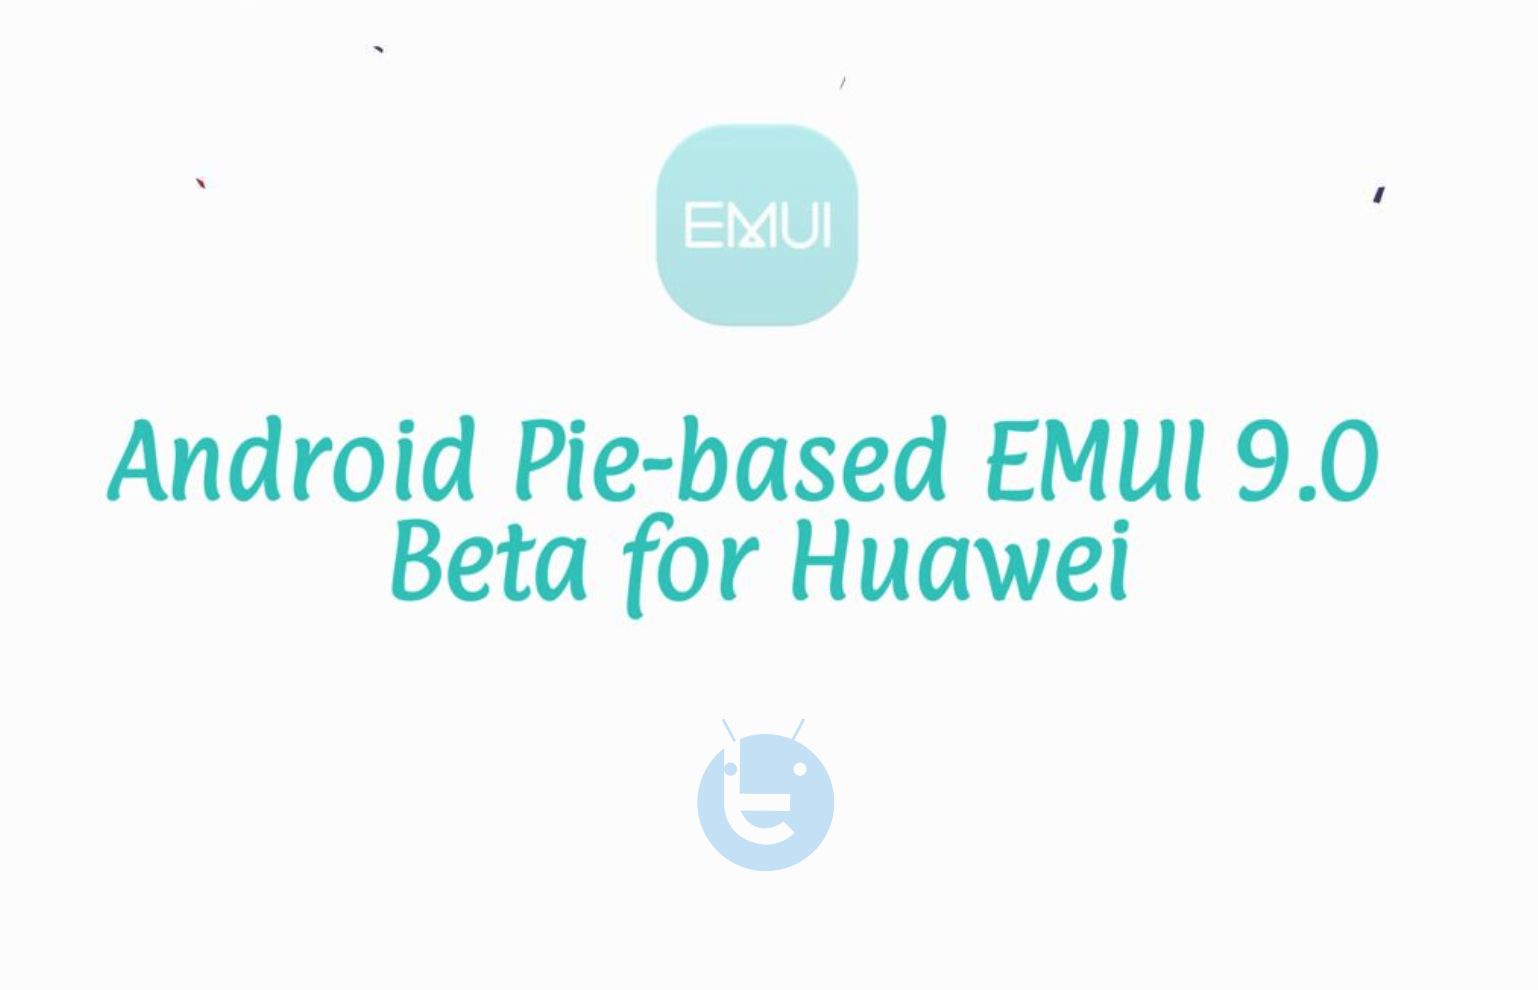 EMUI 9.0 Beta